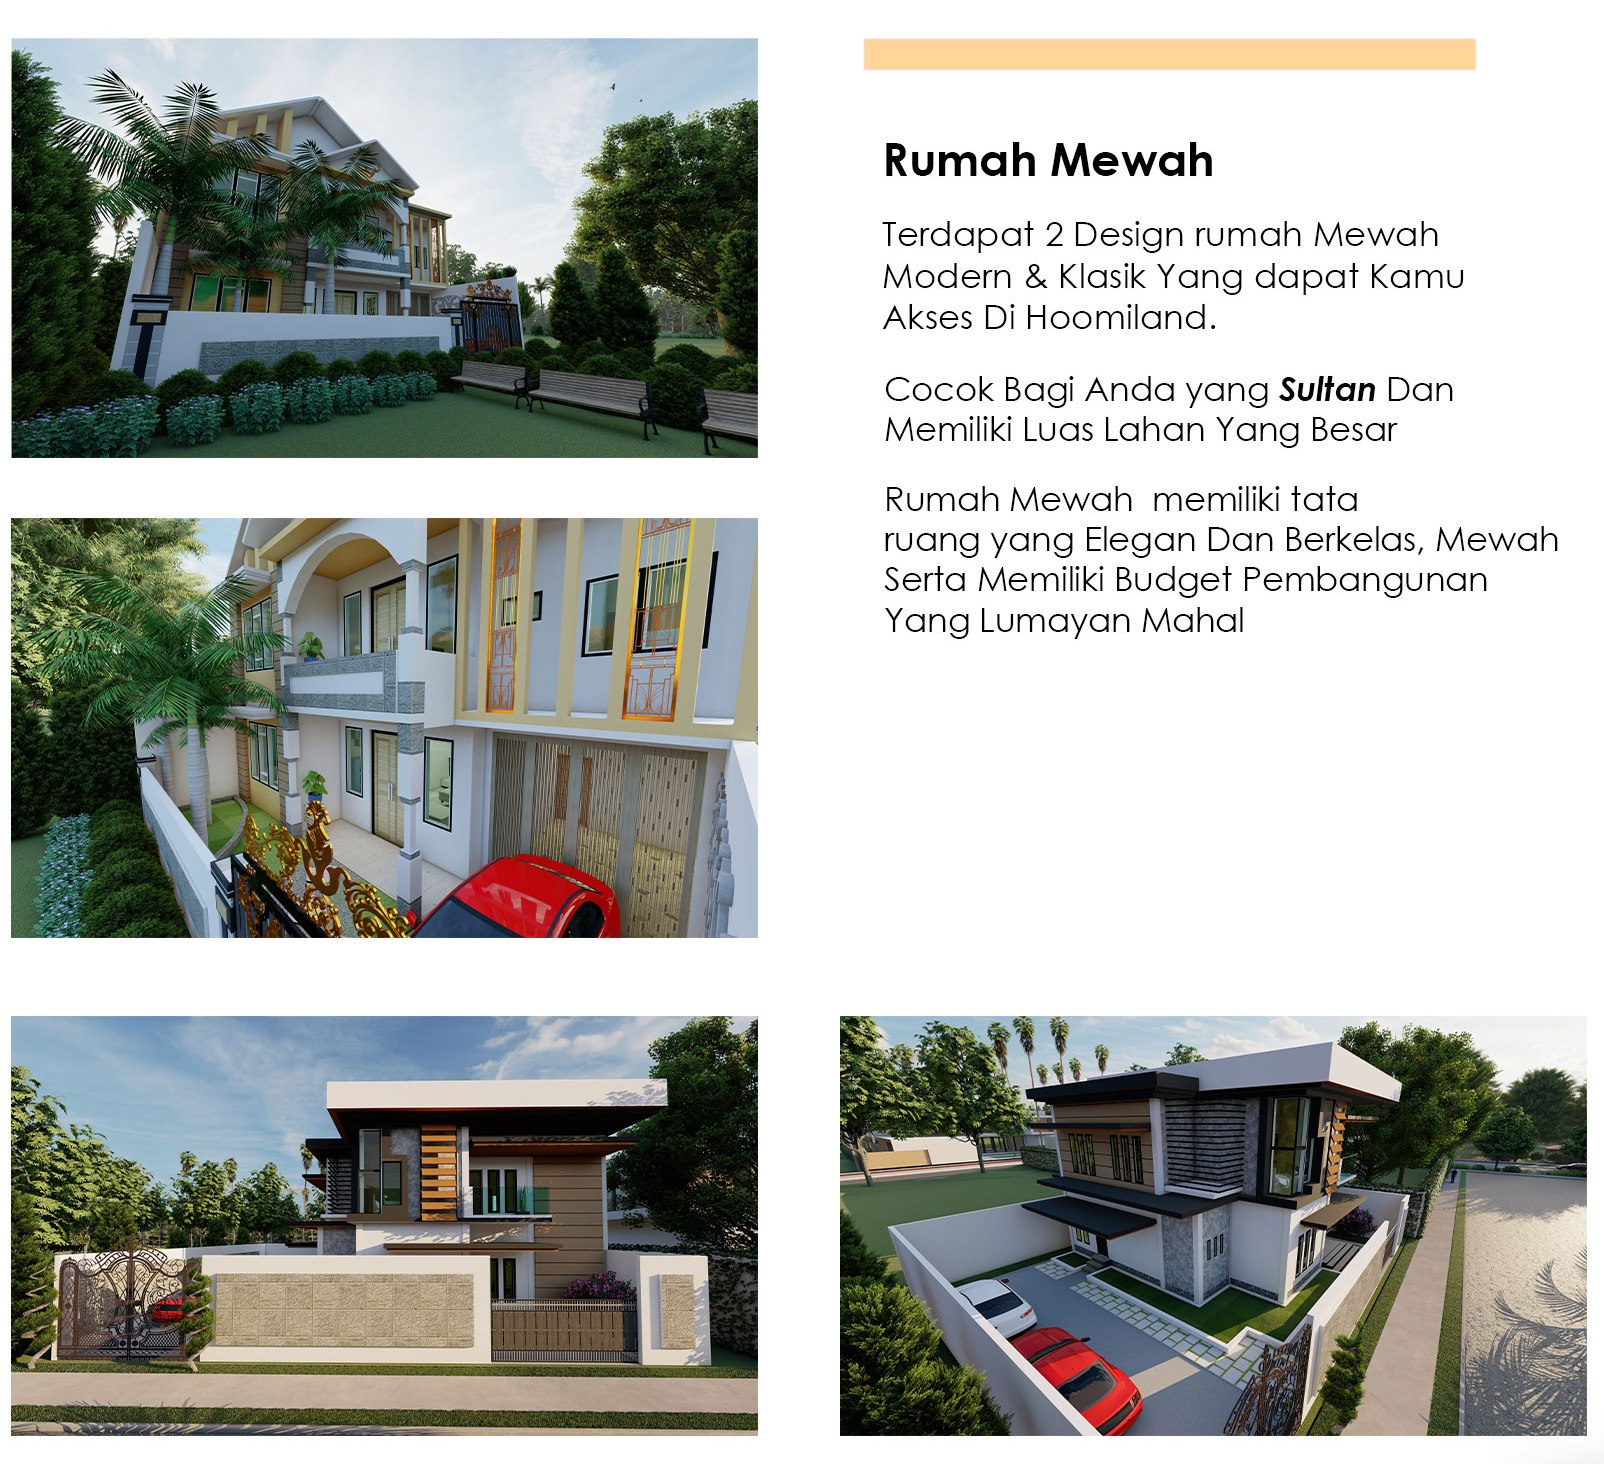 Desain Gambar Kerja RAB Estimasi Biaya Hitungan Bangunan Rumah 2 Lantai Dan 1 Lantai Pusat Properti Syariah Blitar Solusi Menghindari Riba Meningkatkan Iman Taqwa Zakat Sedekah